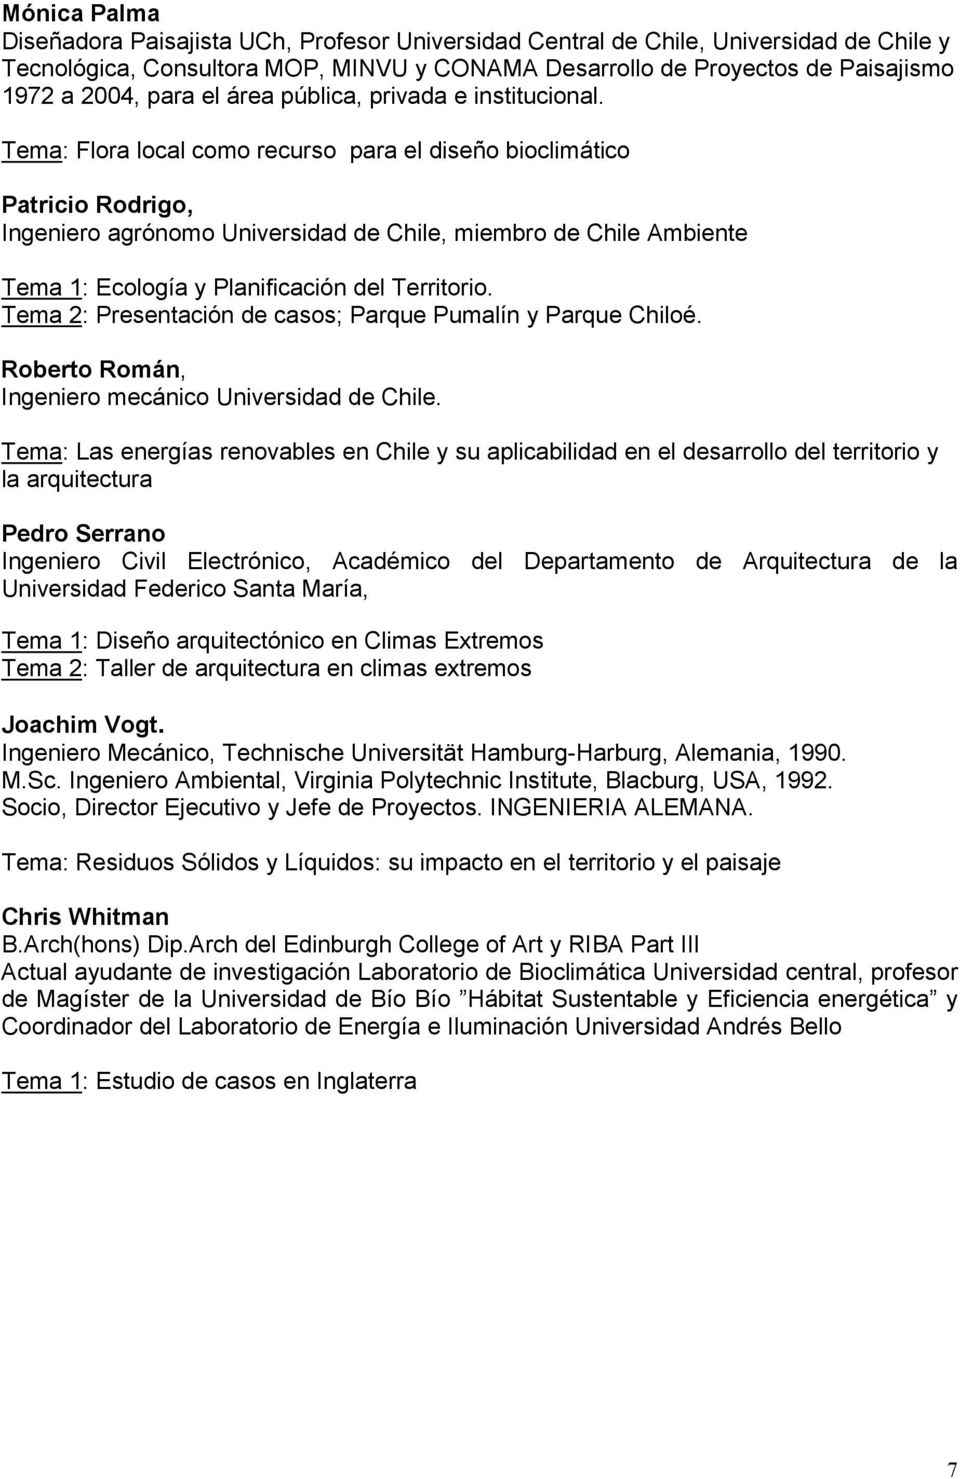 Tema: Flora local como recurso para el diseño bioclimático Patricio Rodrigo, Ingeniero agrónomo Universidad de Chile, miembro de Chile Ambiente Tema 1: Ecología y Planificación del Territorio.